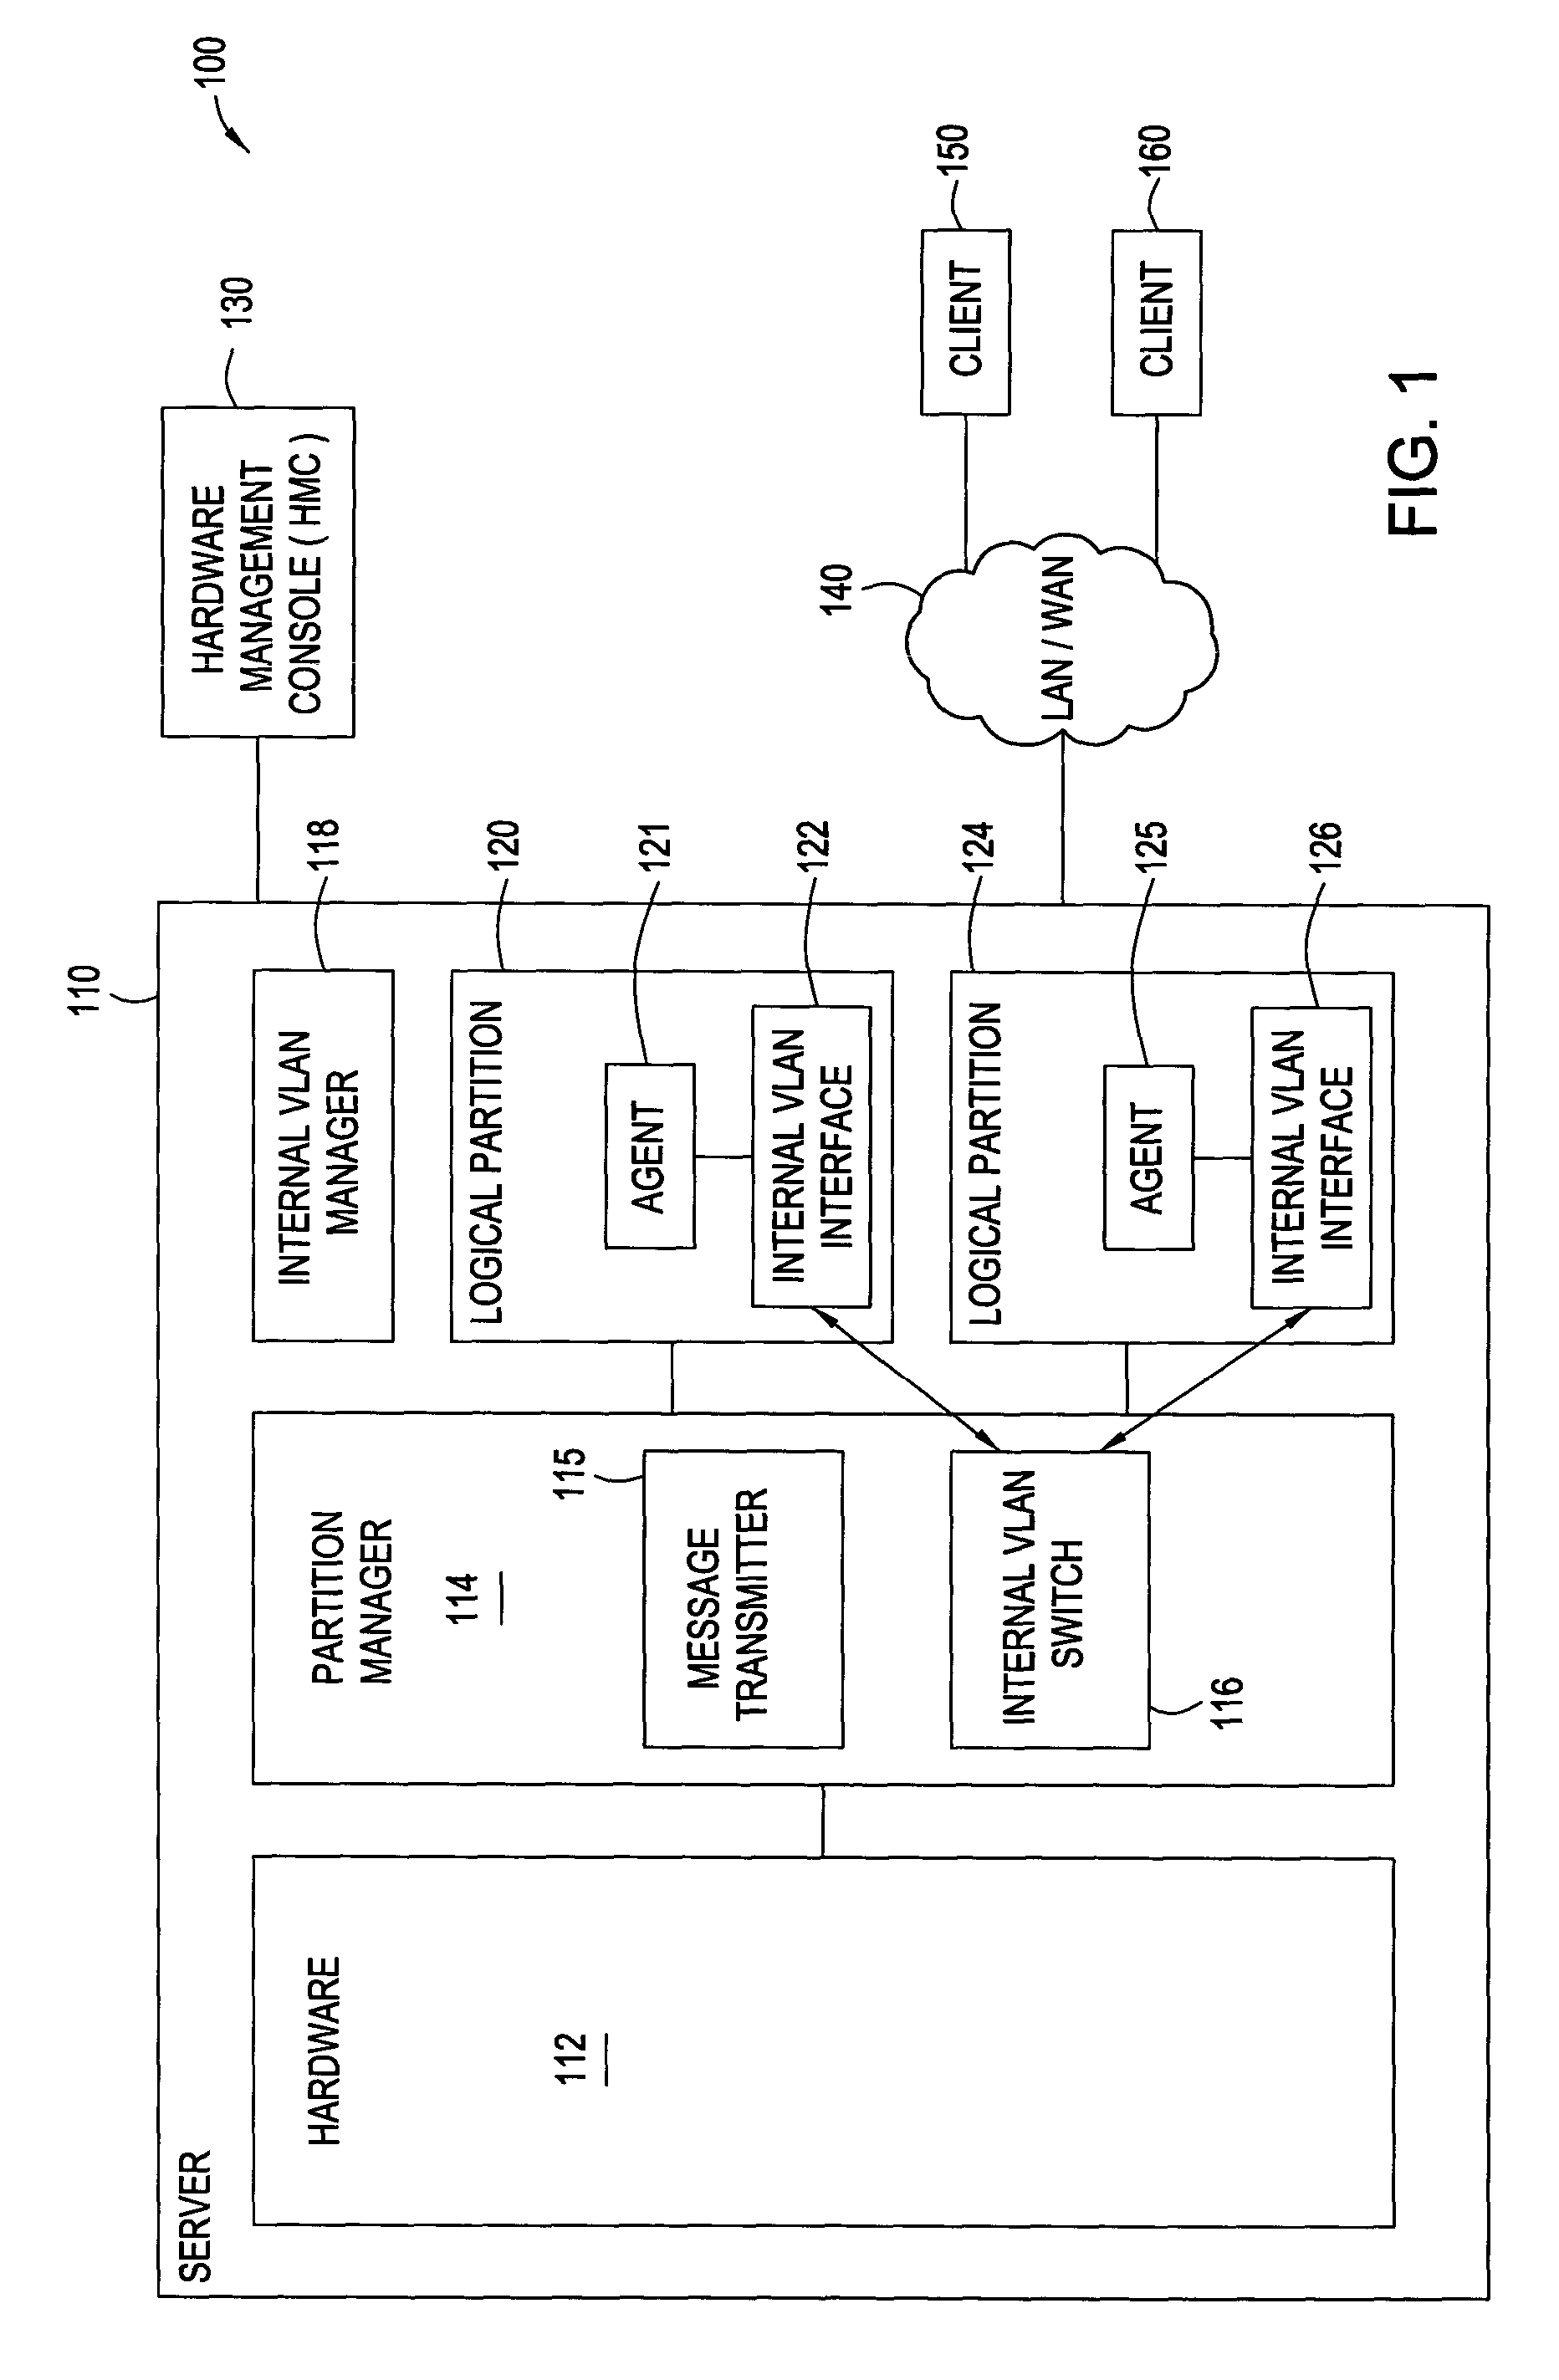 Auto-configuration of an internal VLAN network interface